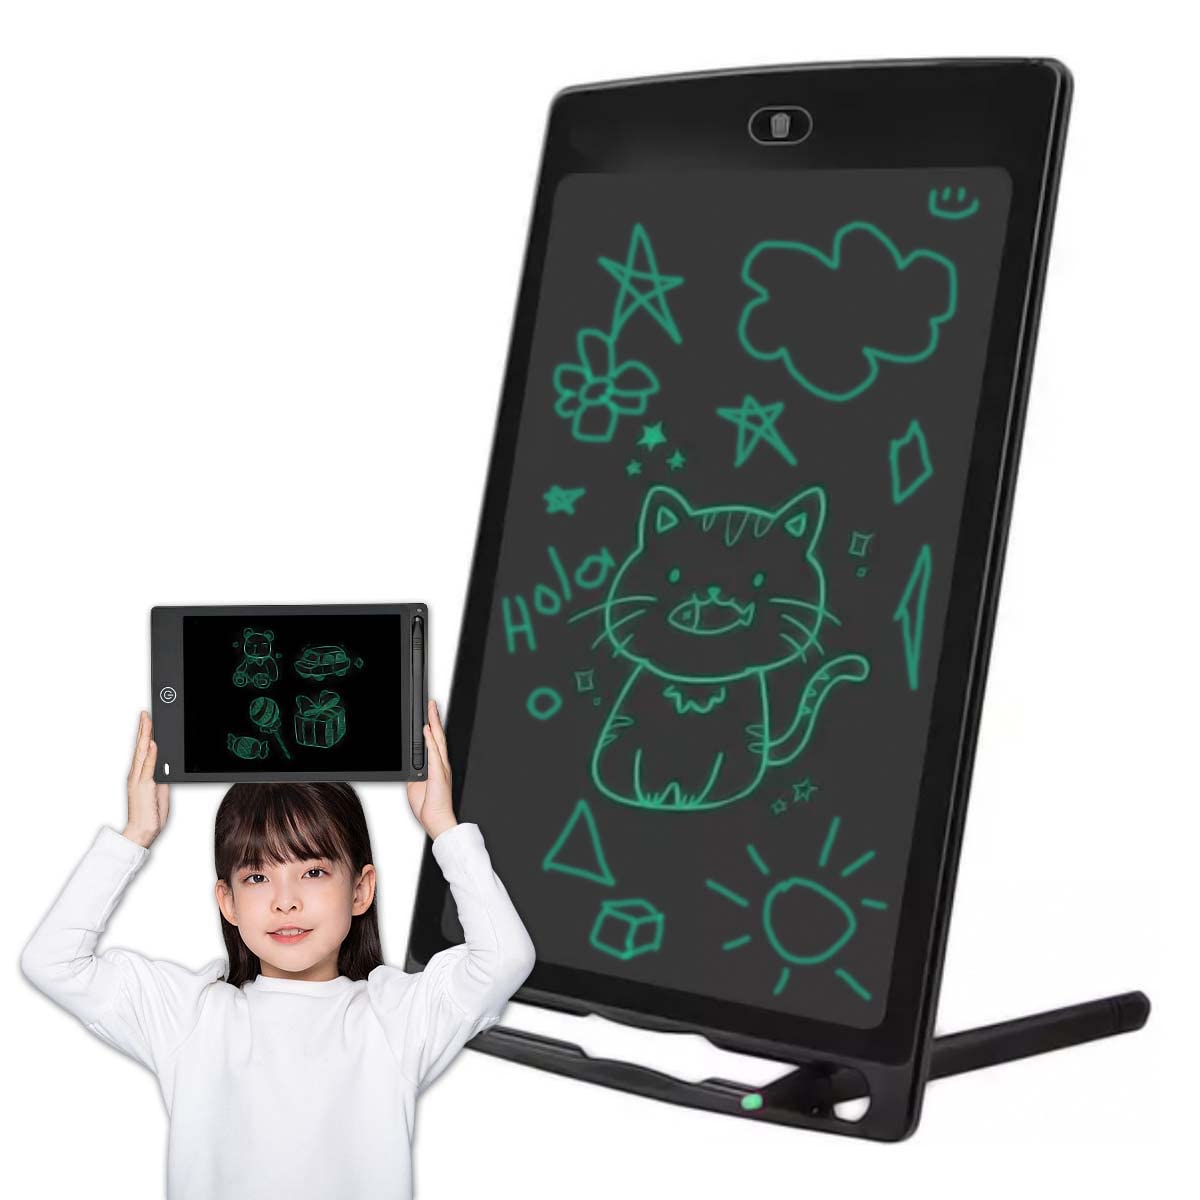 سبورة سحرية للاطفال مقاس 8.5 بوصة، تابلت تفاعلي LCD للكتابة والرسم مع زر مسح فوري، العاب تعليمية للبنات والاولاد، لوحة رسم الكترونية